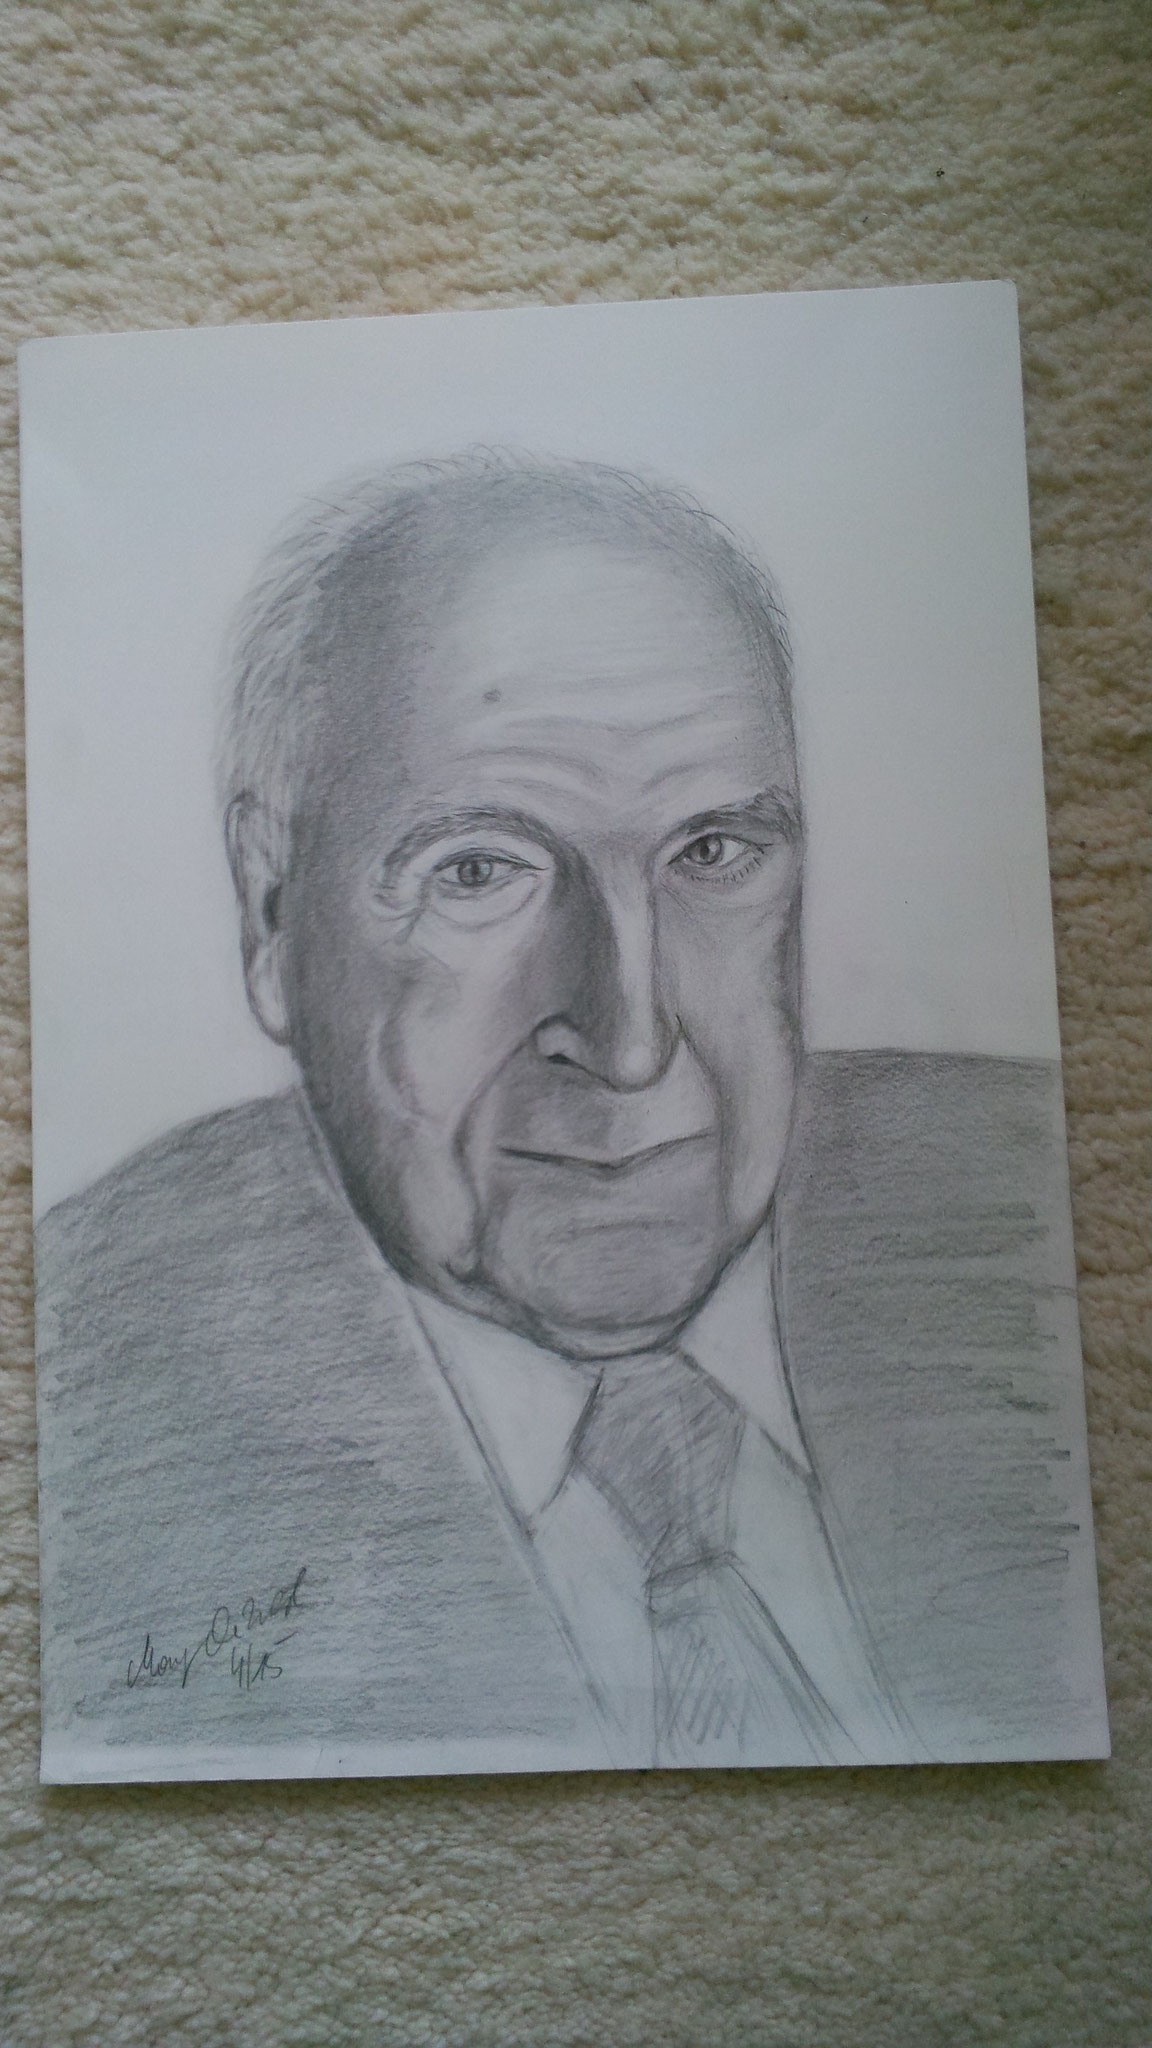 Dr. Helmut Kohl